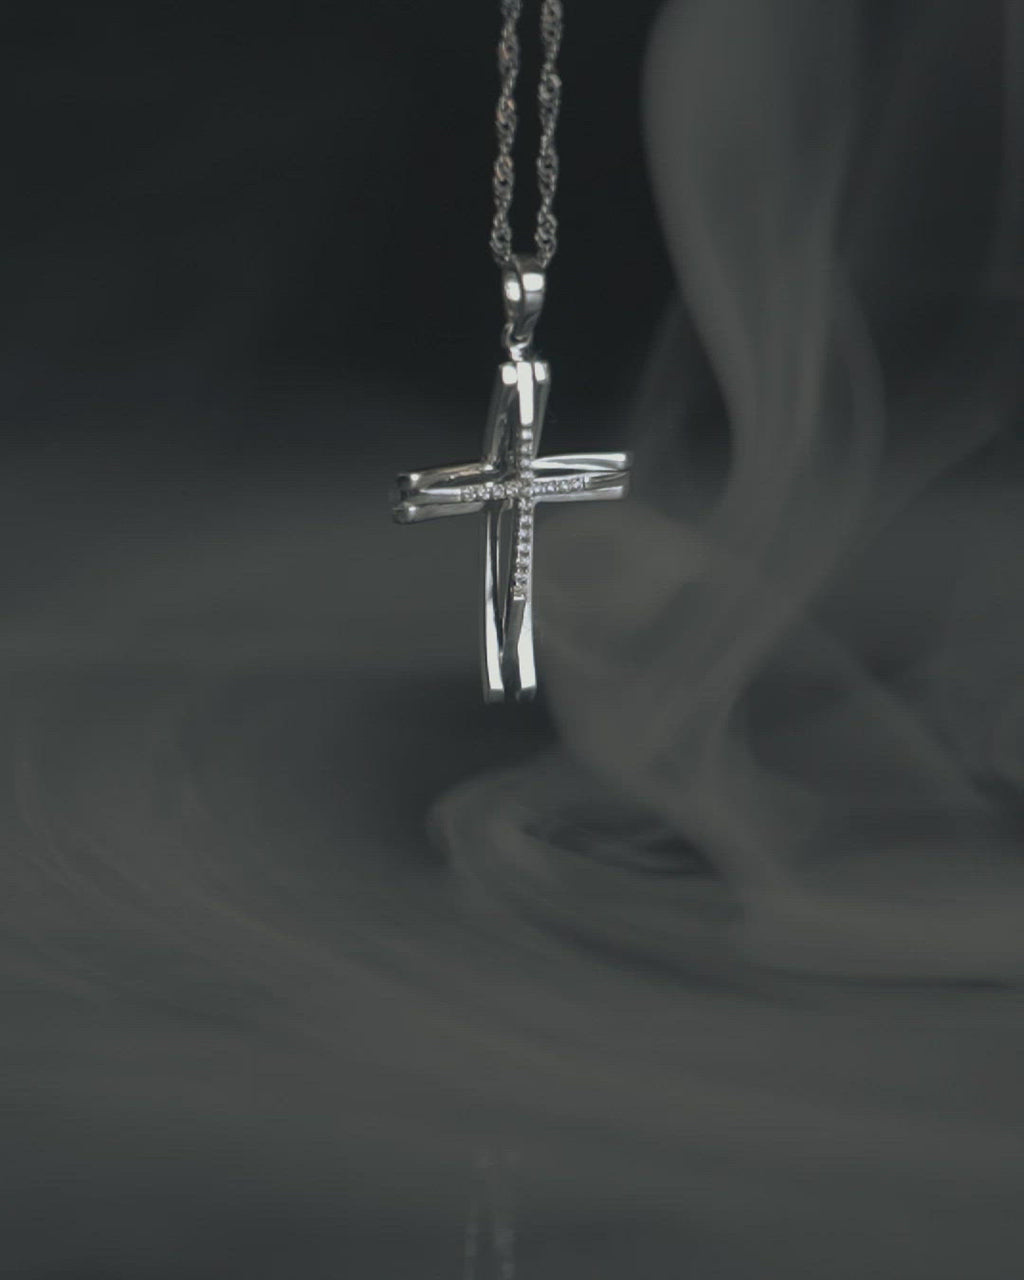 Γυναικείος σταυρός από λευκόχρυσο Κ18 με διαμάντια, περασμένος σε στριφτή αλυσίδα. 